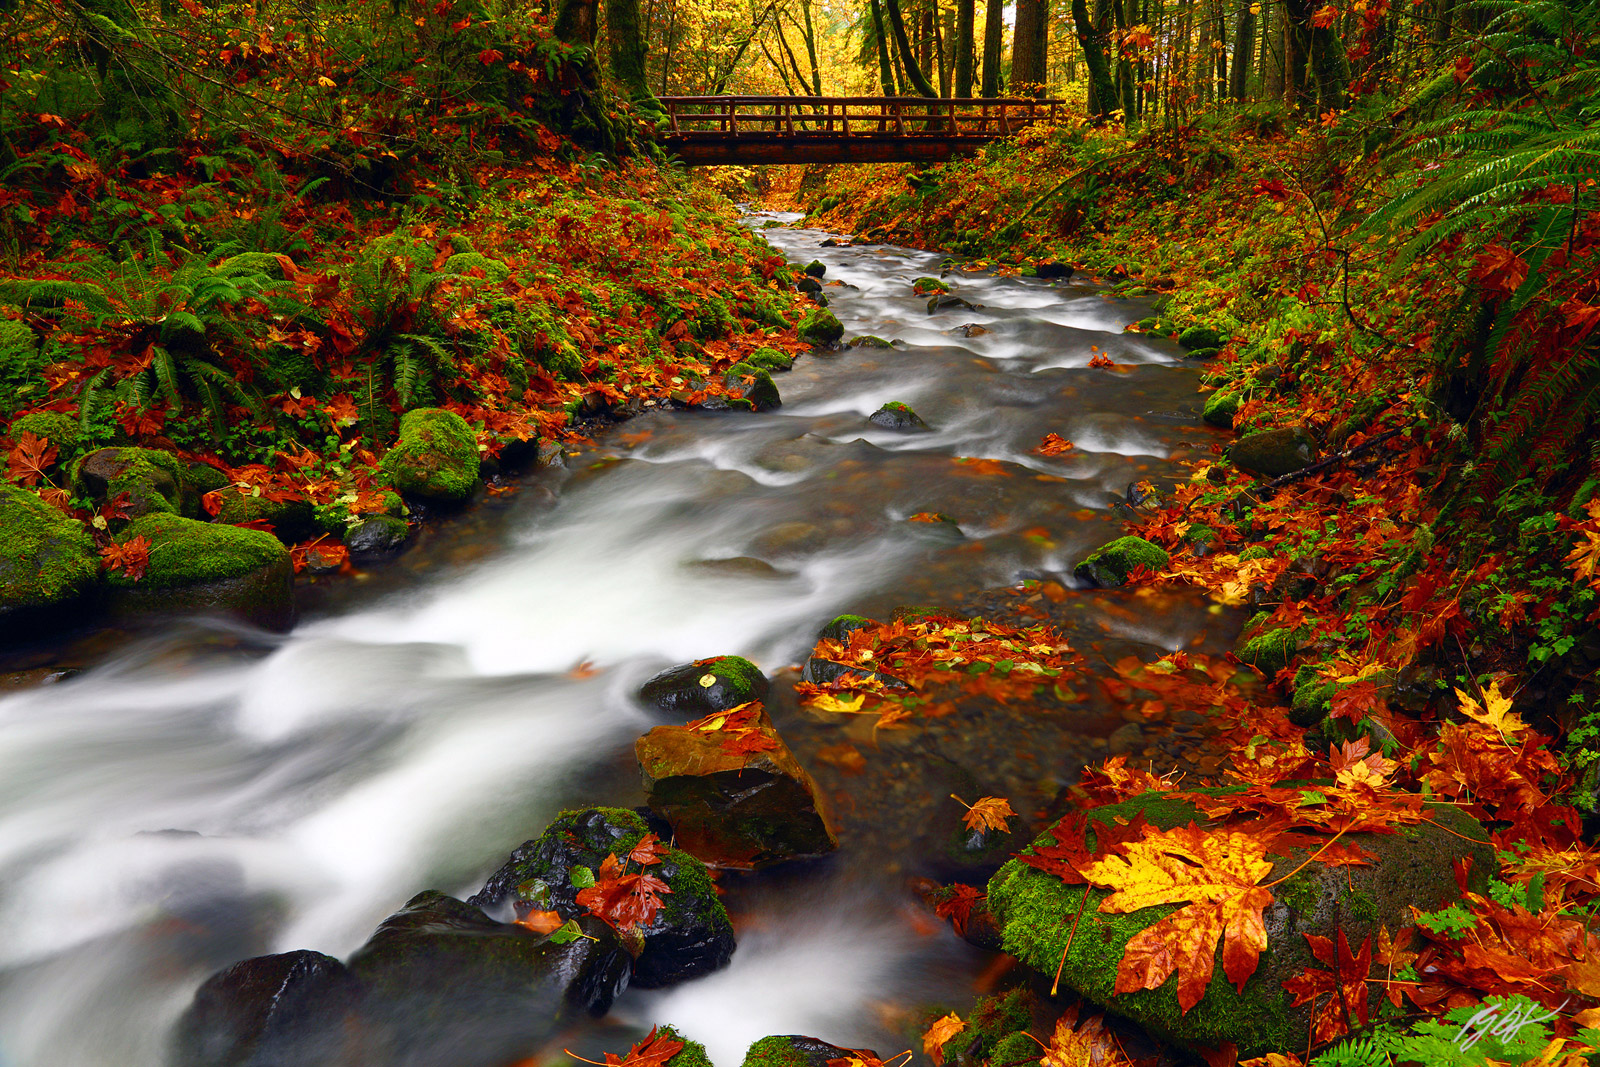 Gorton Creek in Fall in the Columbia River Gorge in Oregon